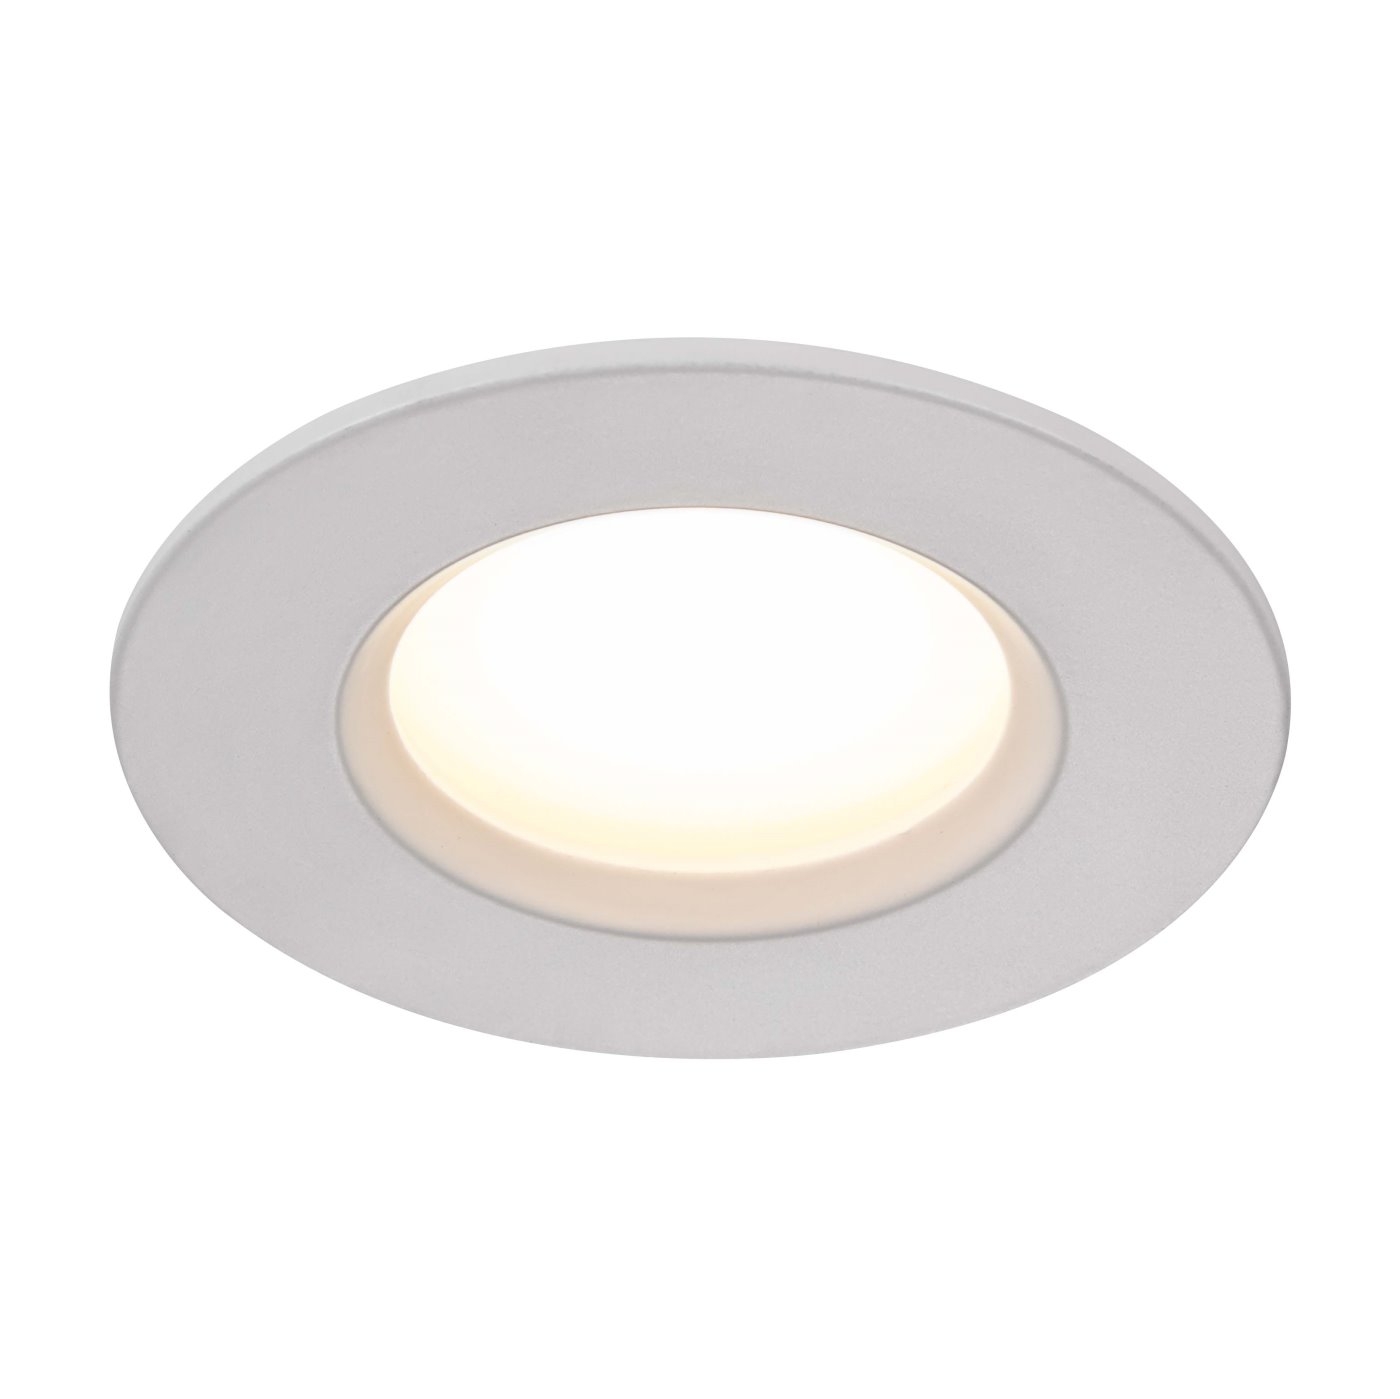 LED Einbauleuchte weiss Nordlux Dorado IP65 345lm 2700K dimmbar unter Einbauleuchten > Badezimmerbeleuchtung > Nach Raum